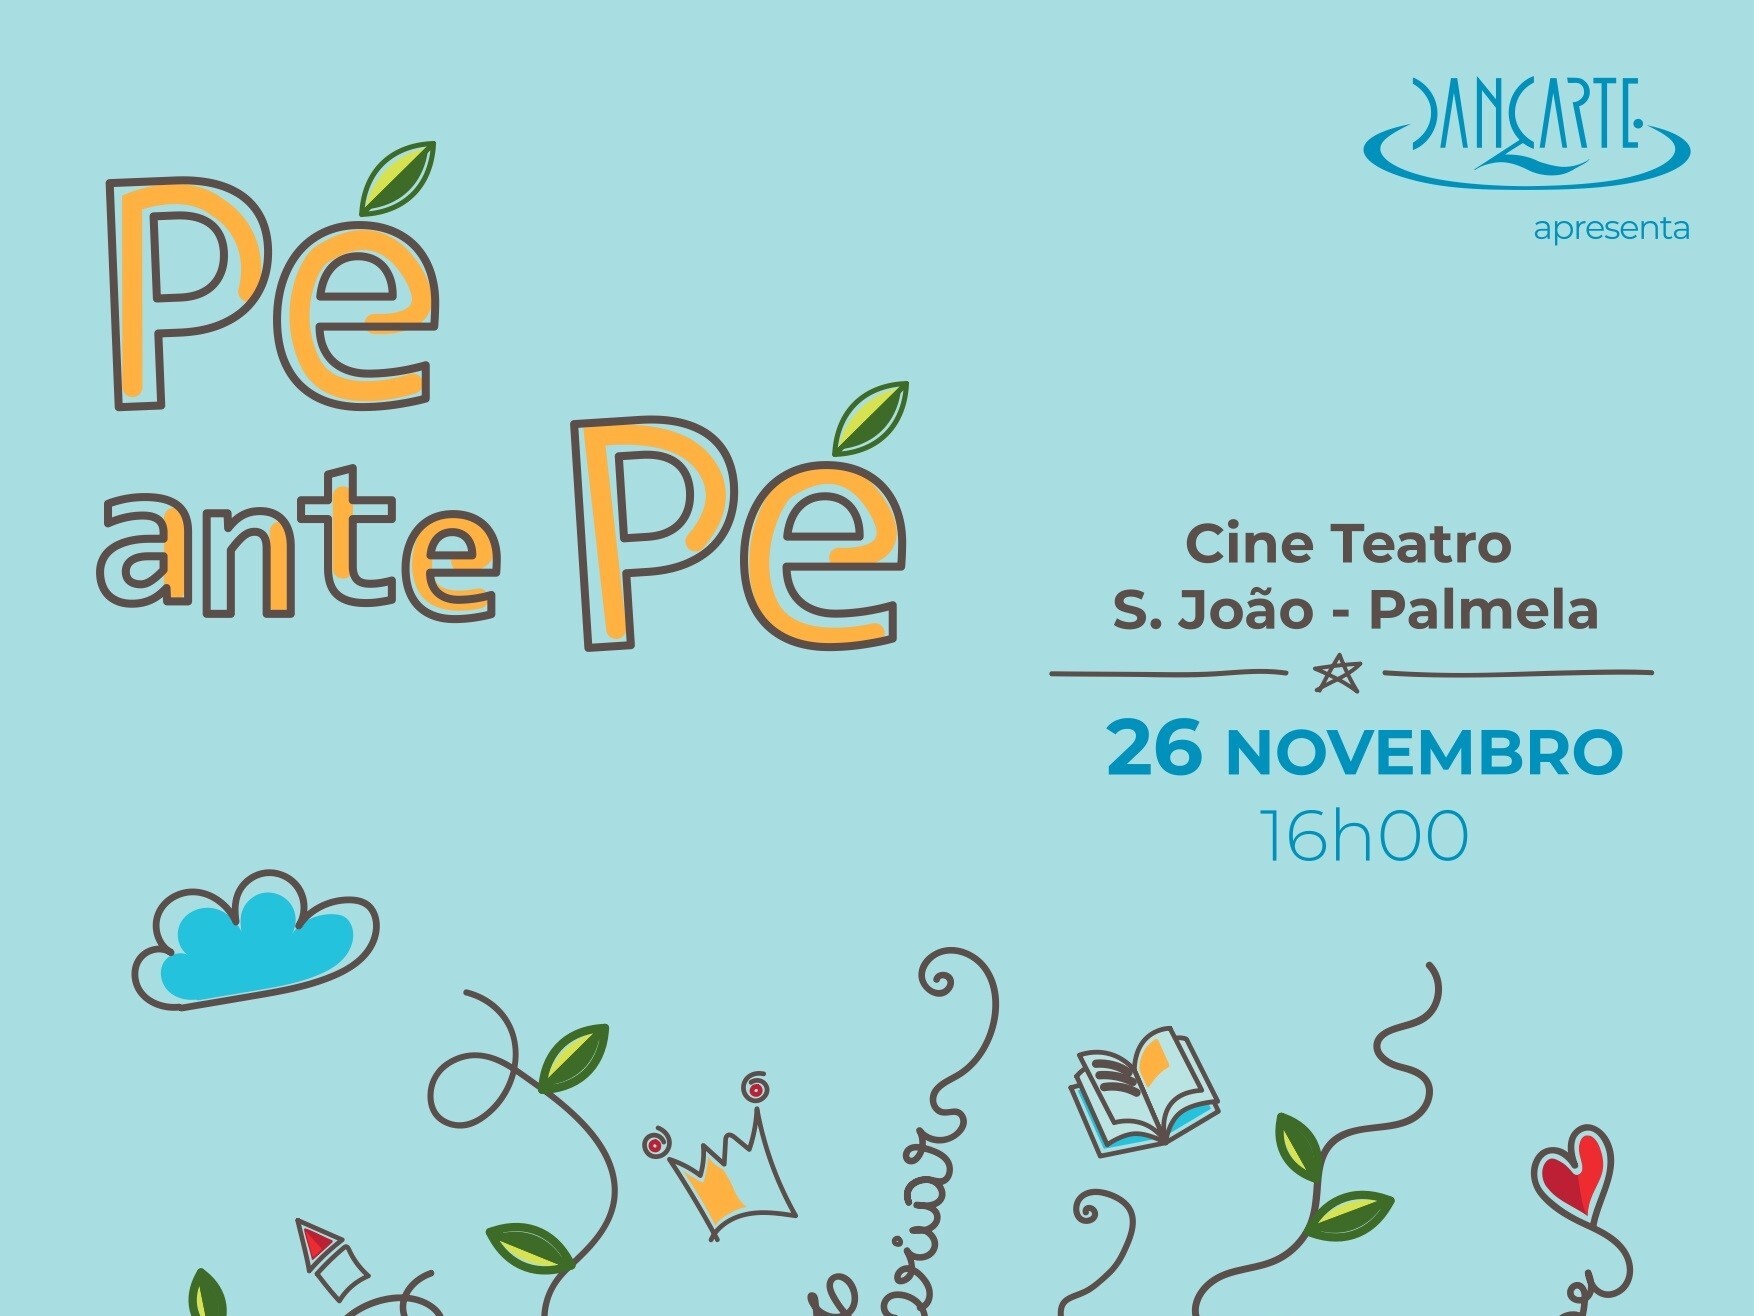 Semana da Dança: espetáculo infantil “Pé ante Pé” no Cine-Teatro S. João